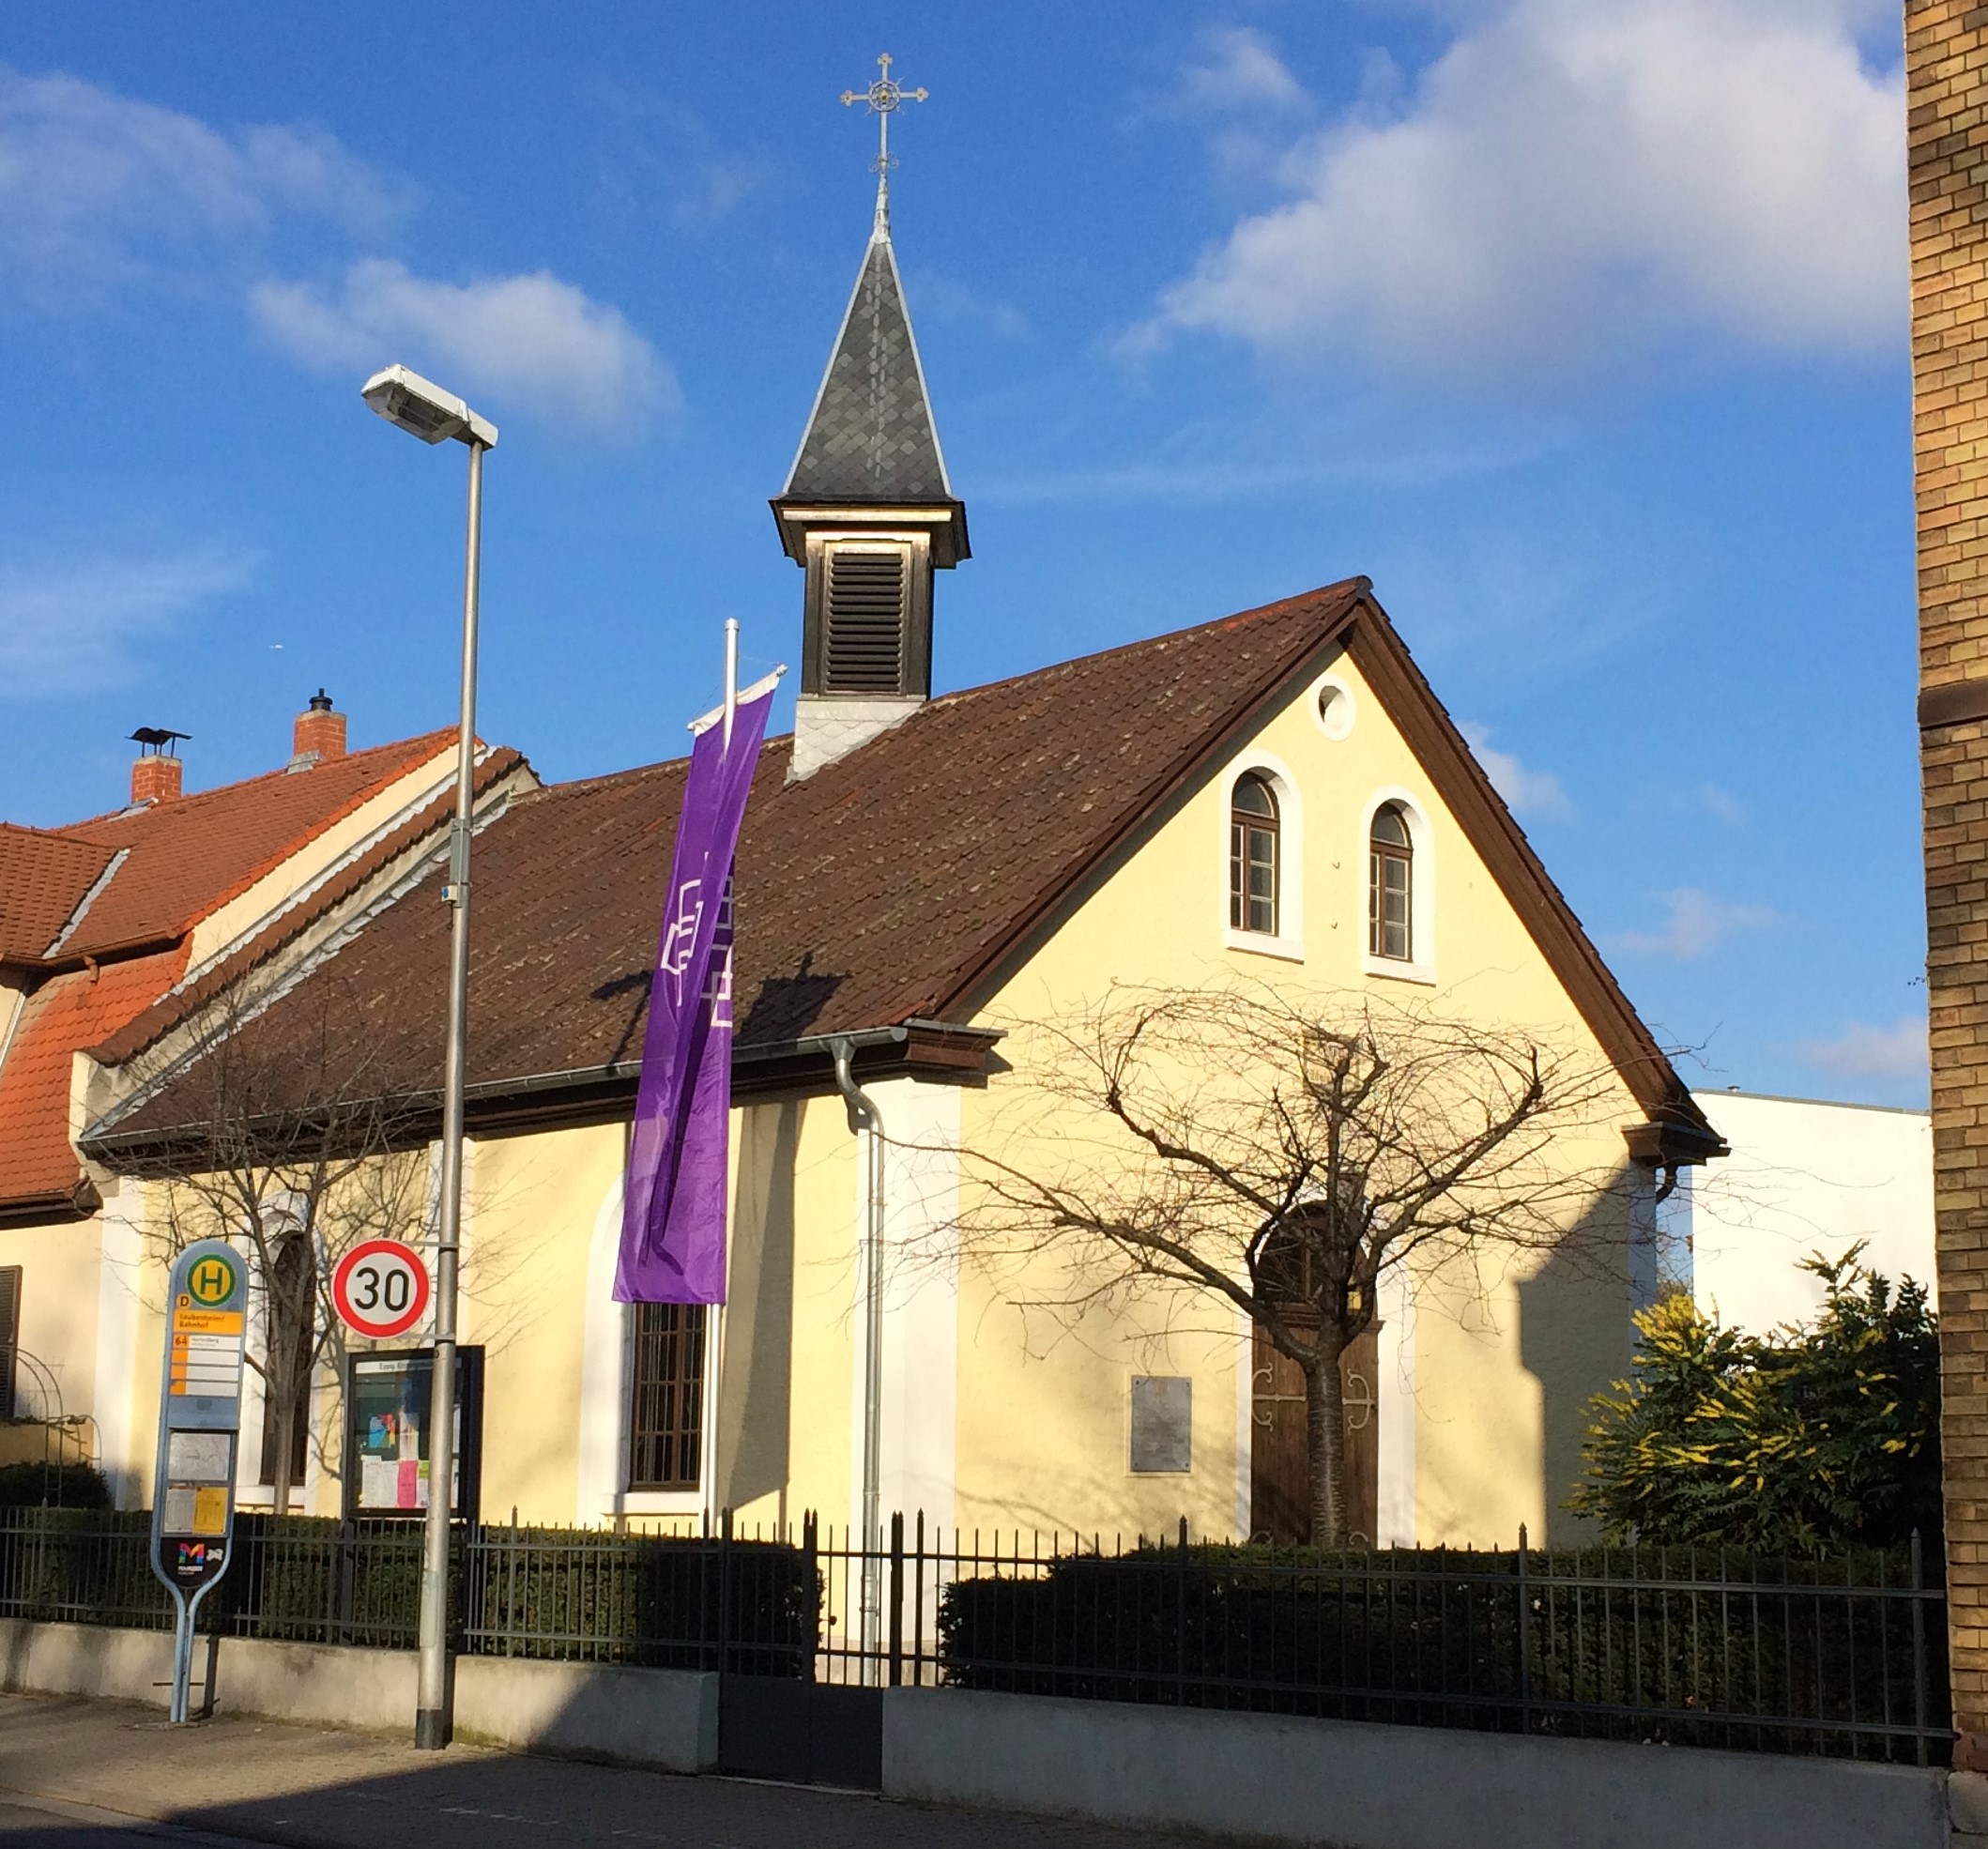 1894 wurde die kleine Kirche von Adolph Umber, einem Gutsbesitzer und Kirchenvorstandsmitglied, in der Größe eines Wohnhauses errichtet. Ein Jahr später wurde sie der Evangelischen Gemeinde als Gottesdienstraum zur Verfügung gestellt und im Jahr 1905 gänz